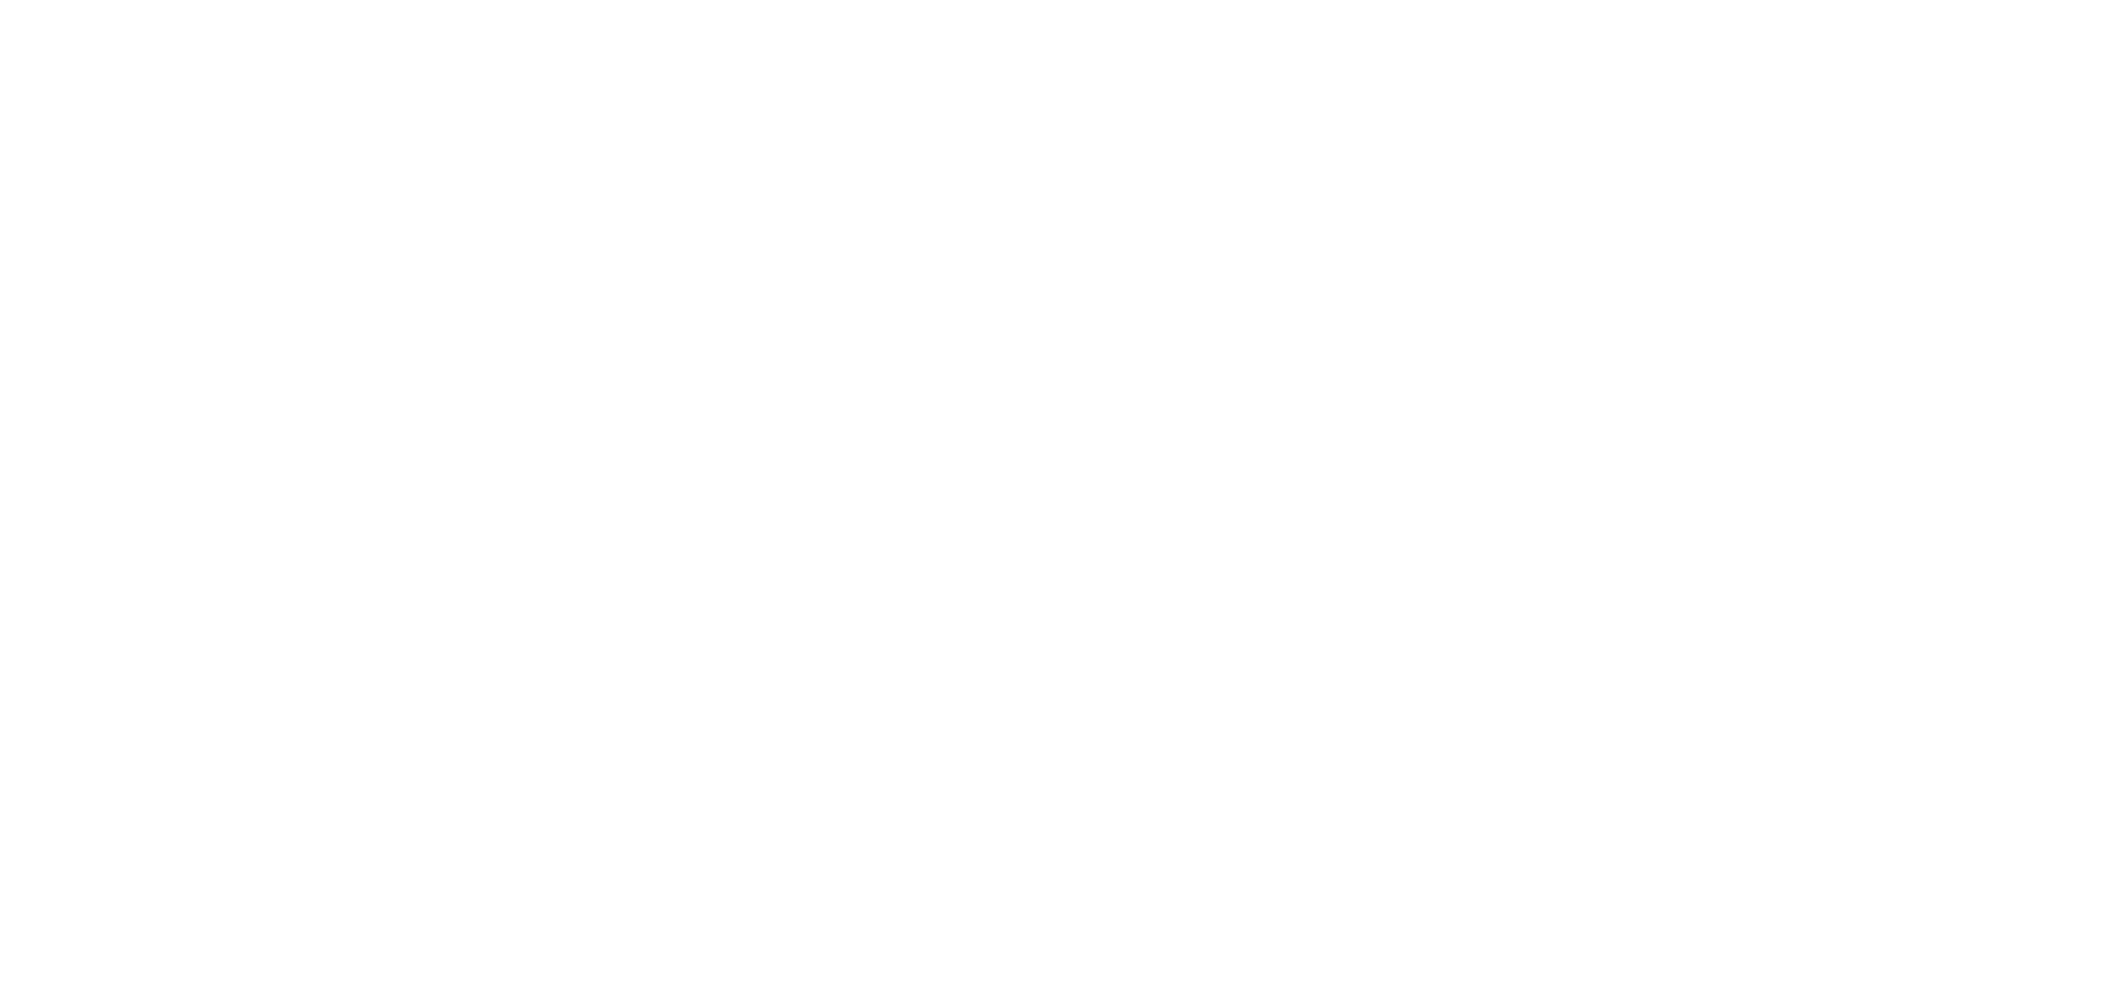 The-Fishnet-Plan-logo-right-side-white